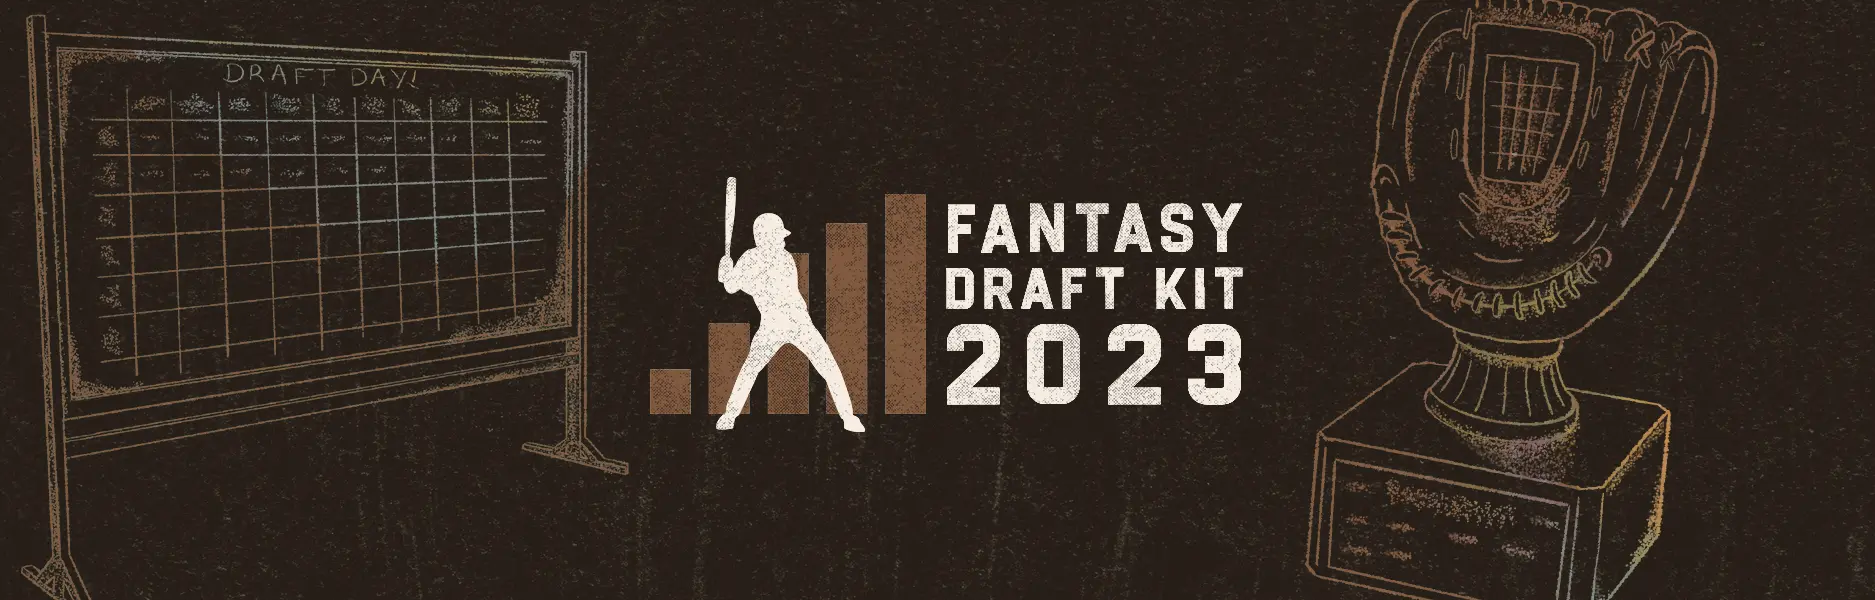 Fantasy Draft Kit 2023